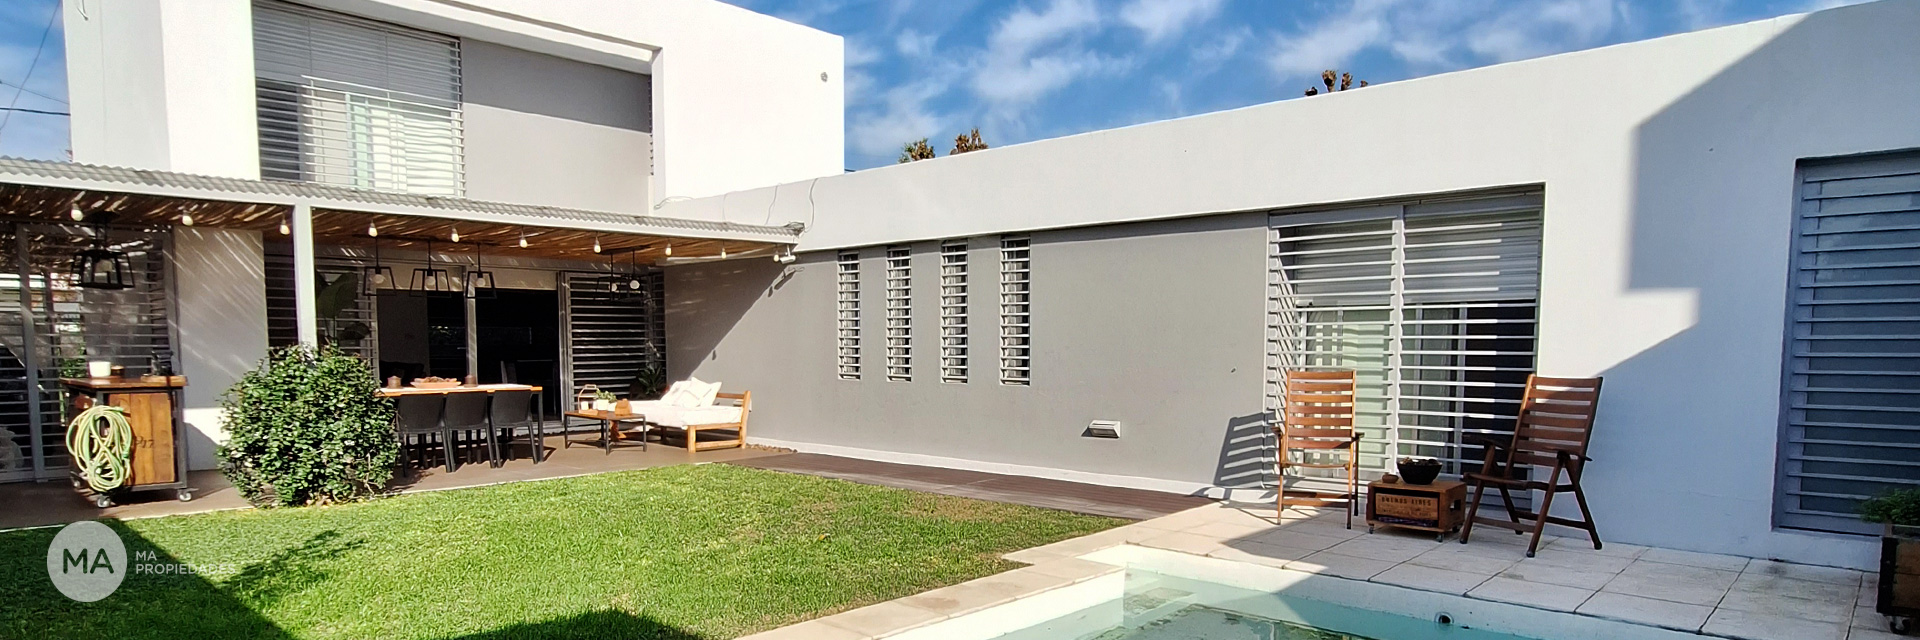 Casa 3 dormitorios, jardín, piscina - Stella 9000 - Fisherton Rosario